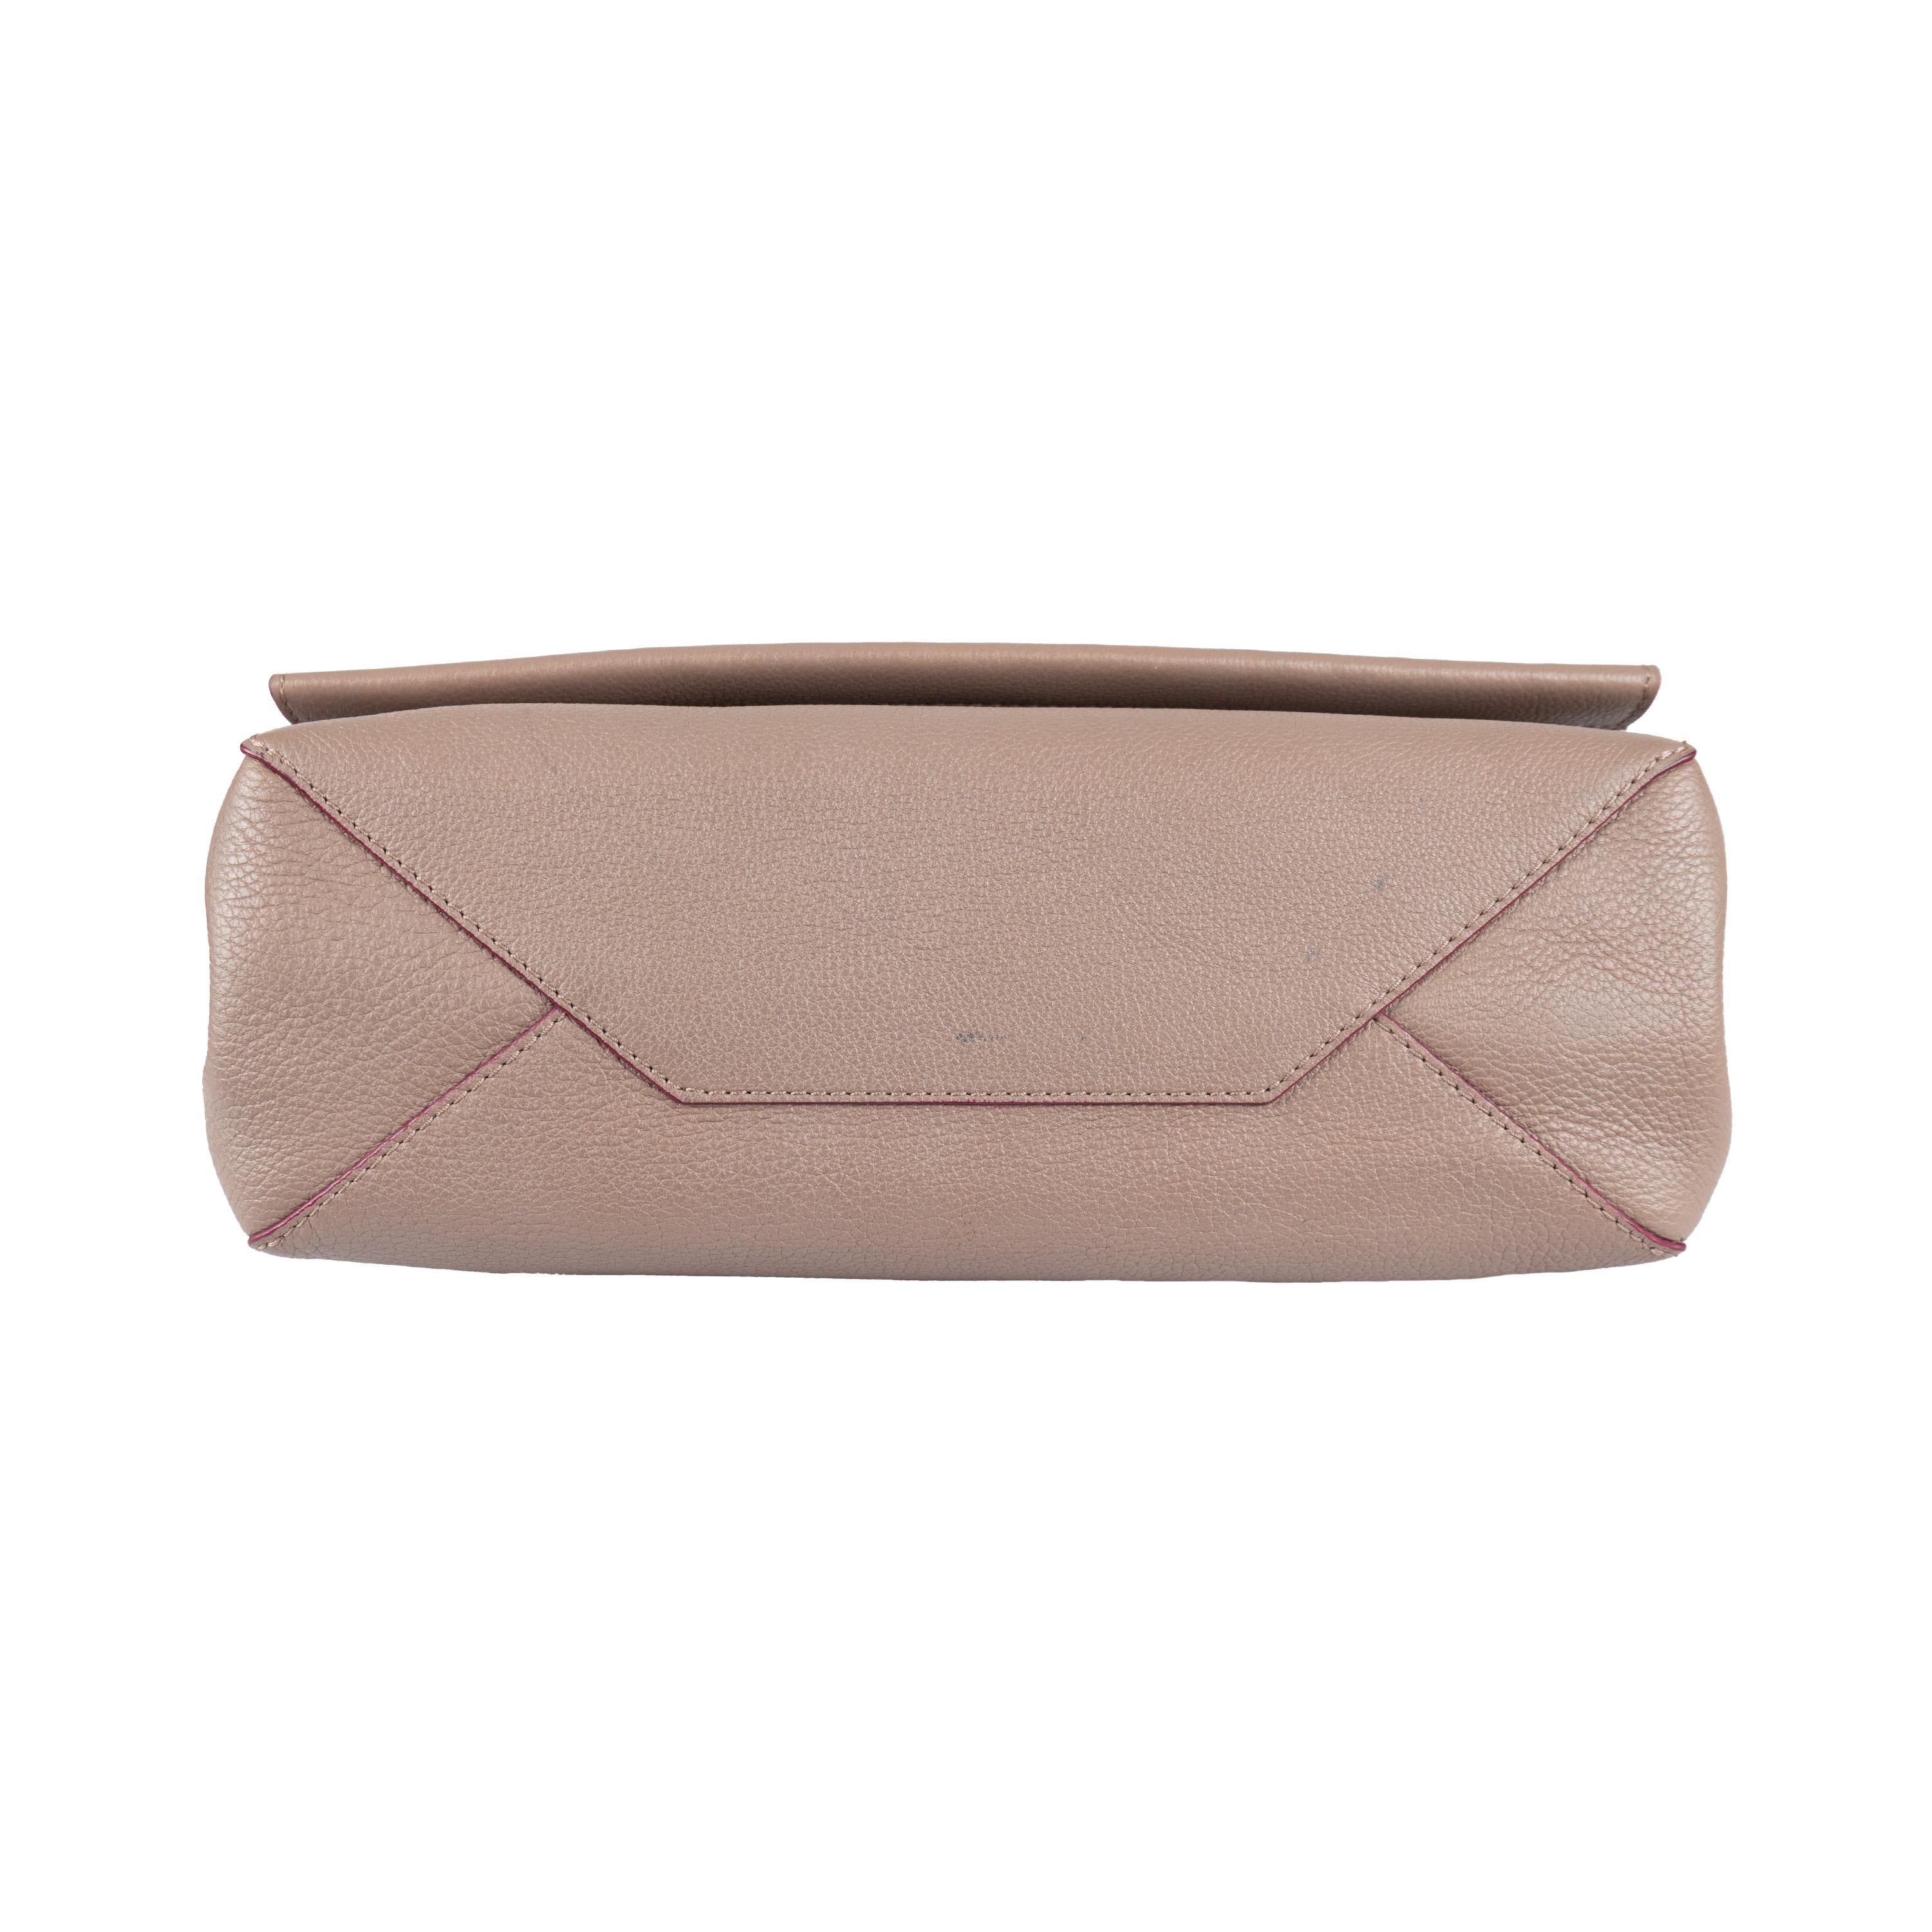 Louis Vuitton Lockme II Handbag  6